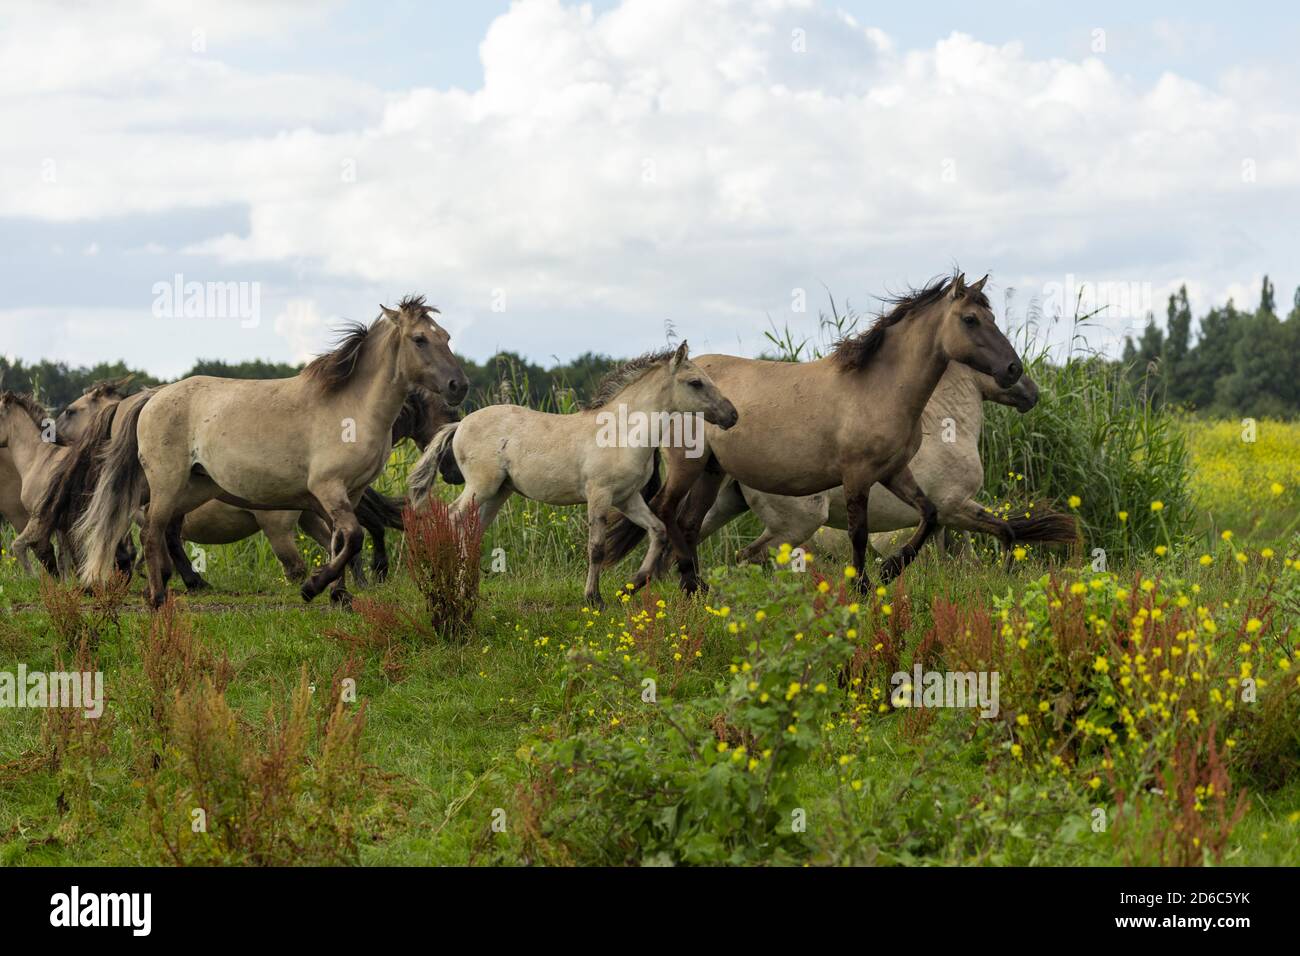 Wilde Konik Pferde oostvaardersplassen Naturschutzgebiet Flevoland Niederlande europa Stockfoto